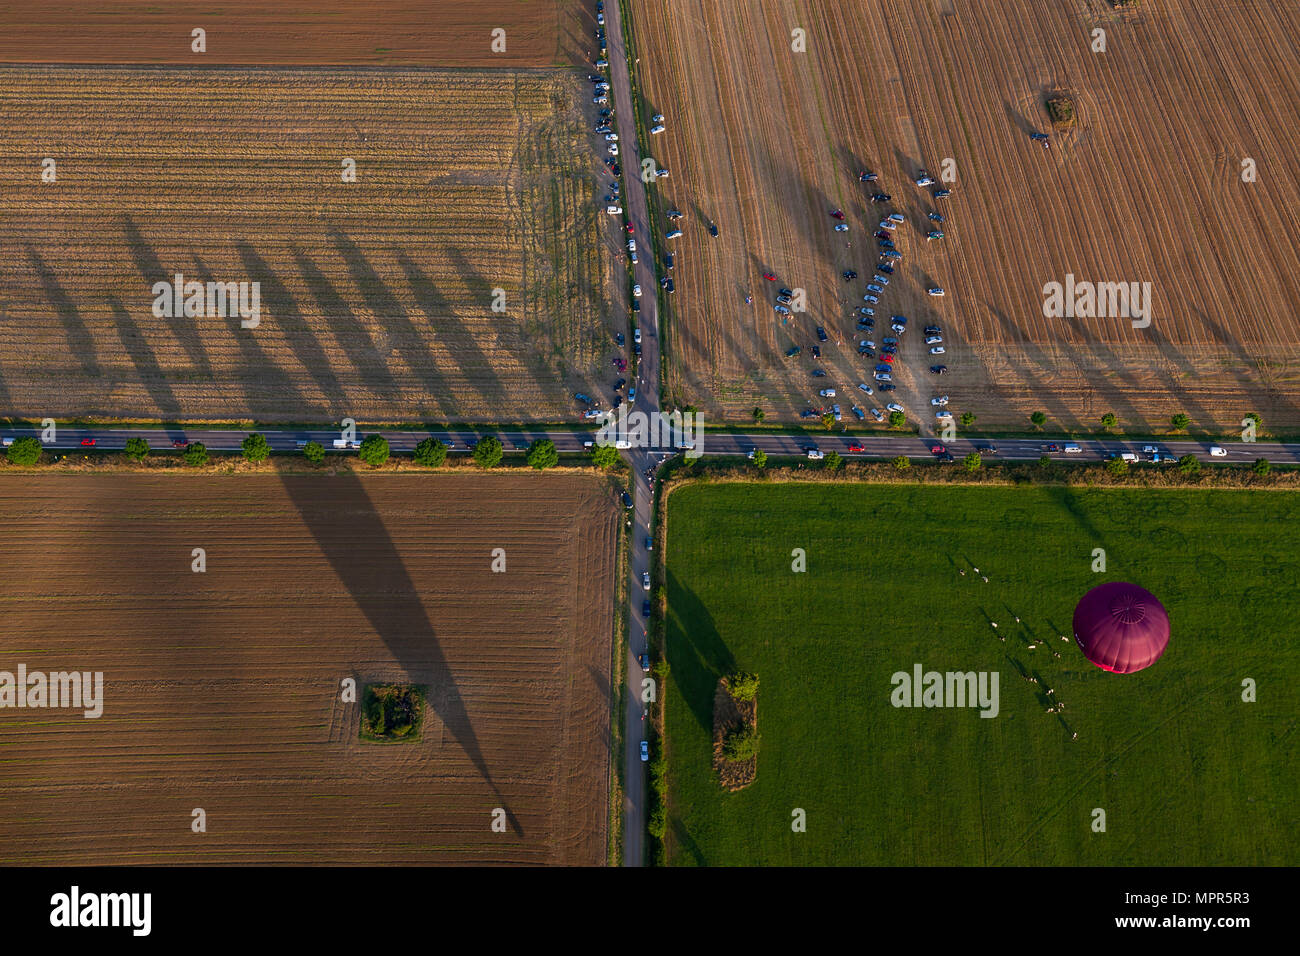 Ländliche Kreuzung aus einem Heißluftballon gesehen. Personen und weiteren Hot Air Ballon am Boden. Stockfoto